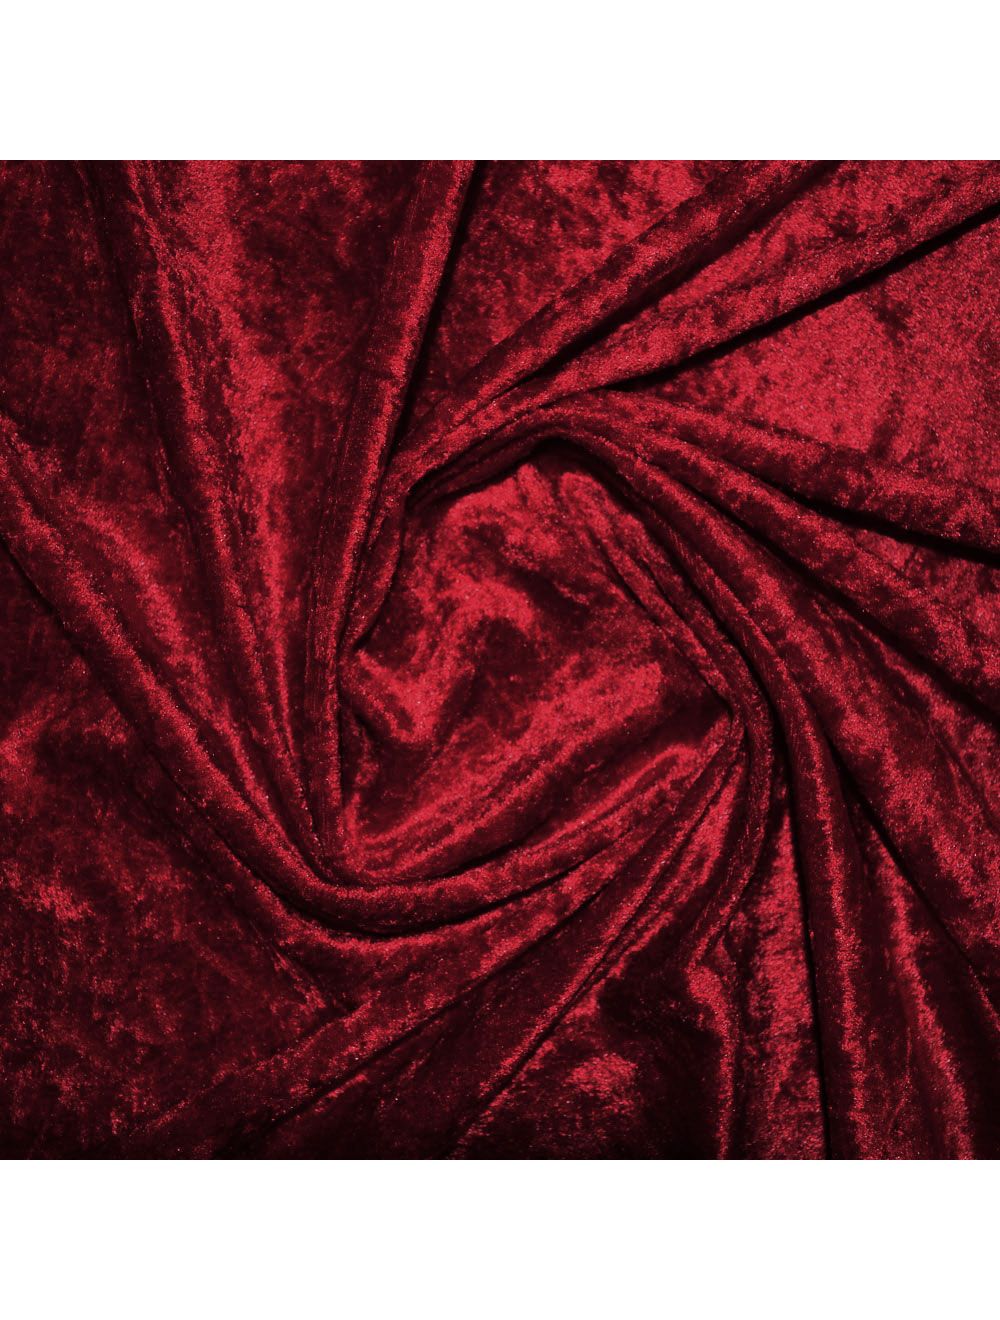 Red Crushed Velvet Fabric | Crushed Velvet Fabric | Calico Laine